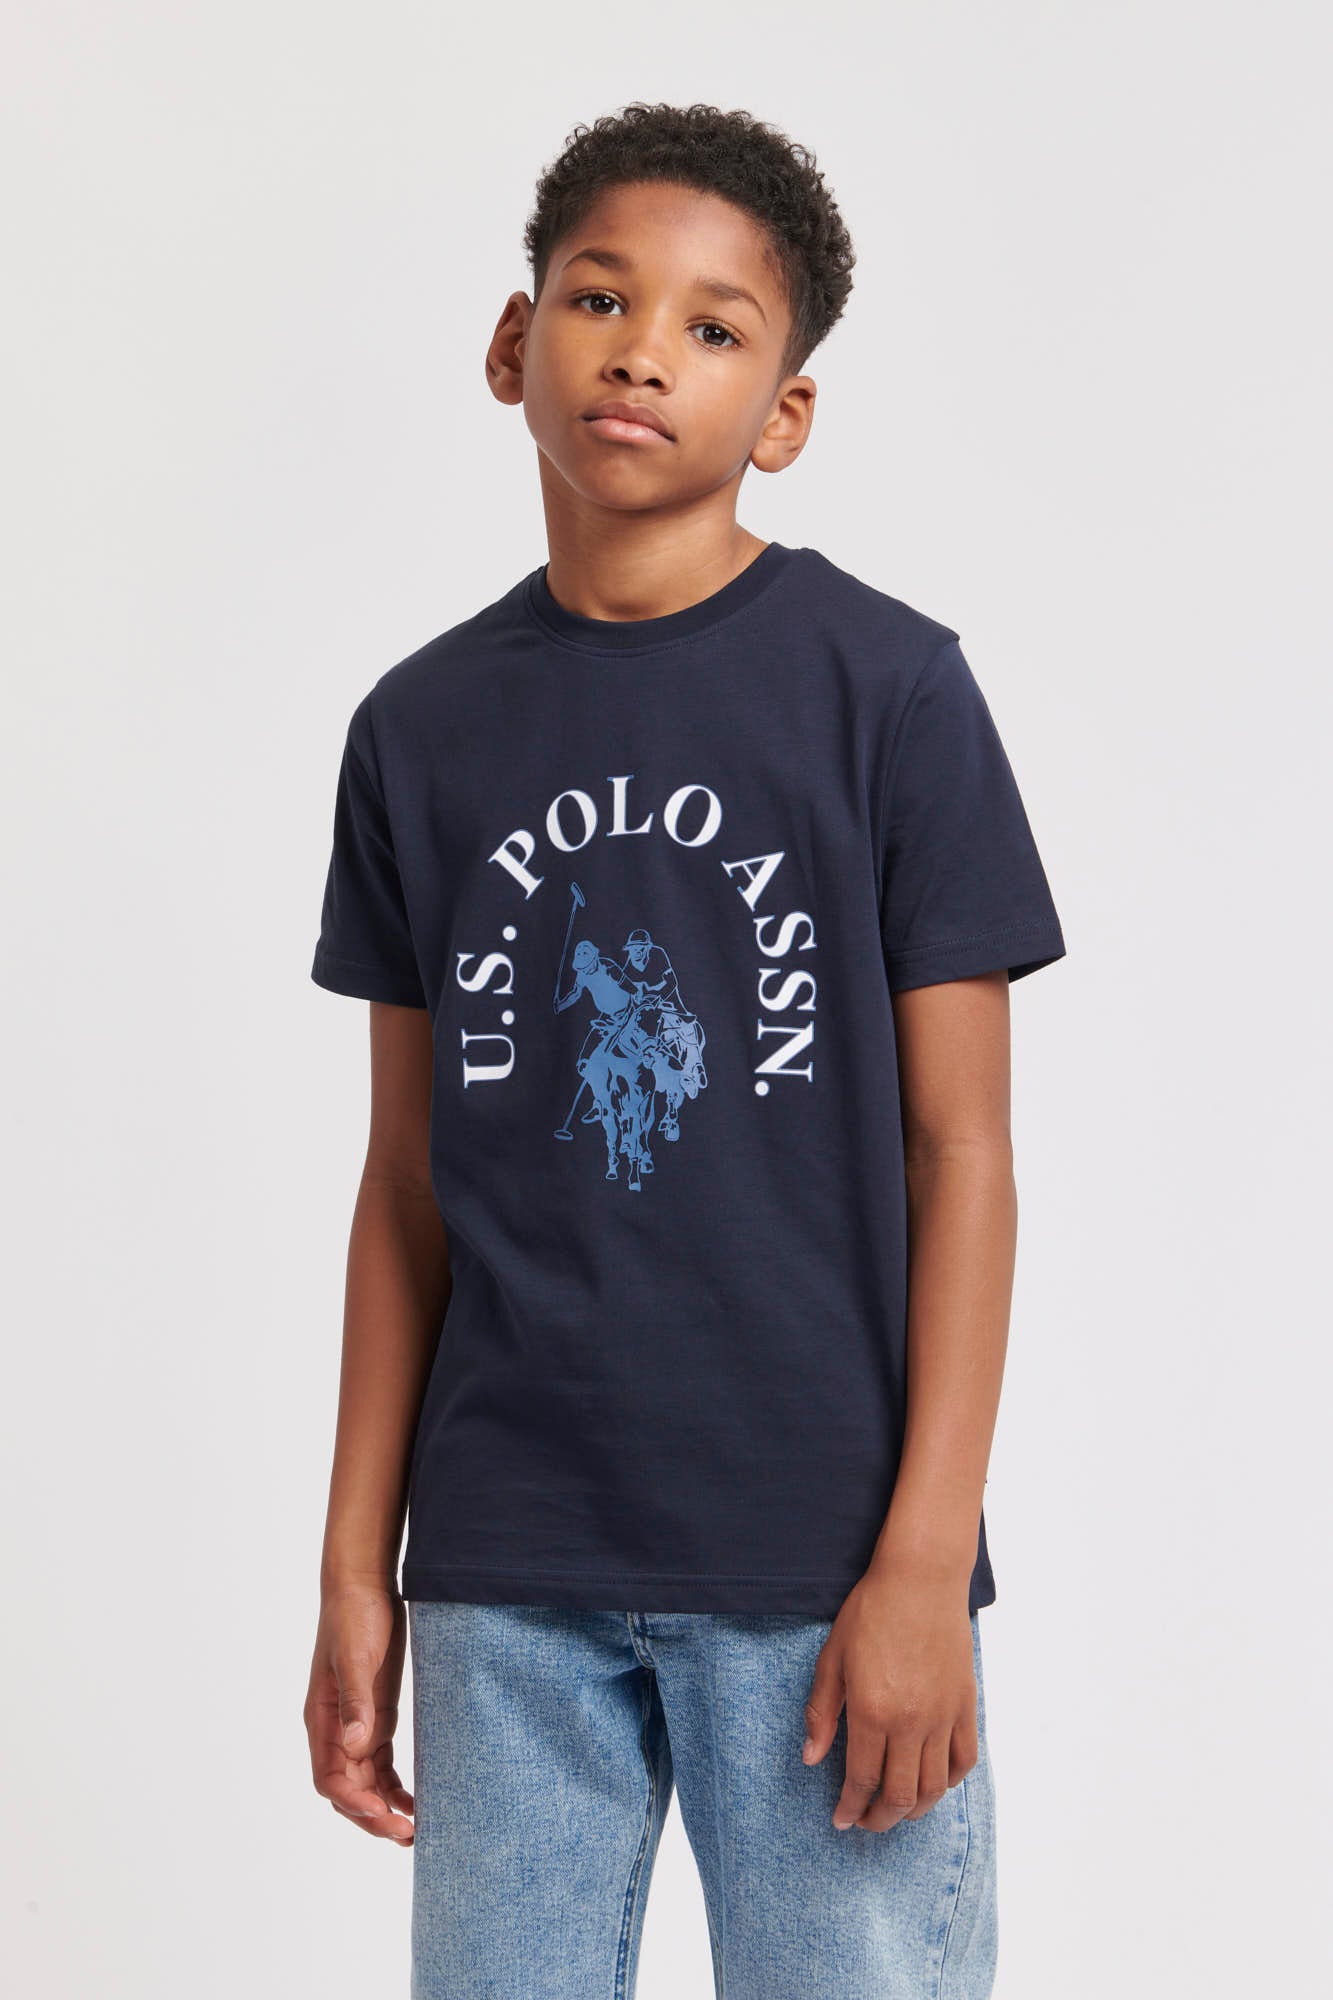 Boys Chest Graphic T-Shirt in Dark Sapphire Navy